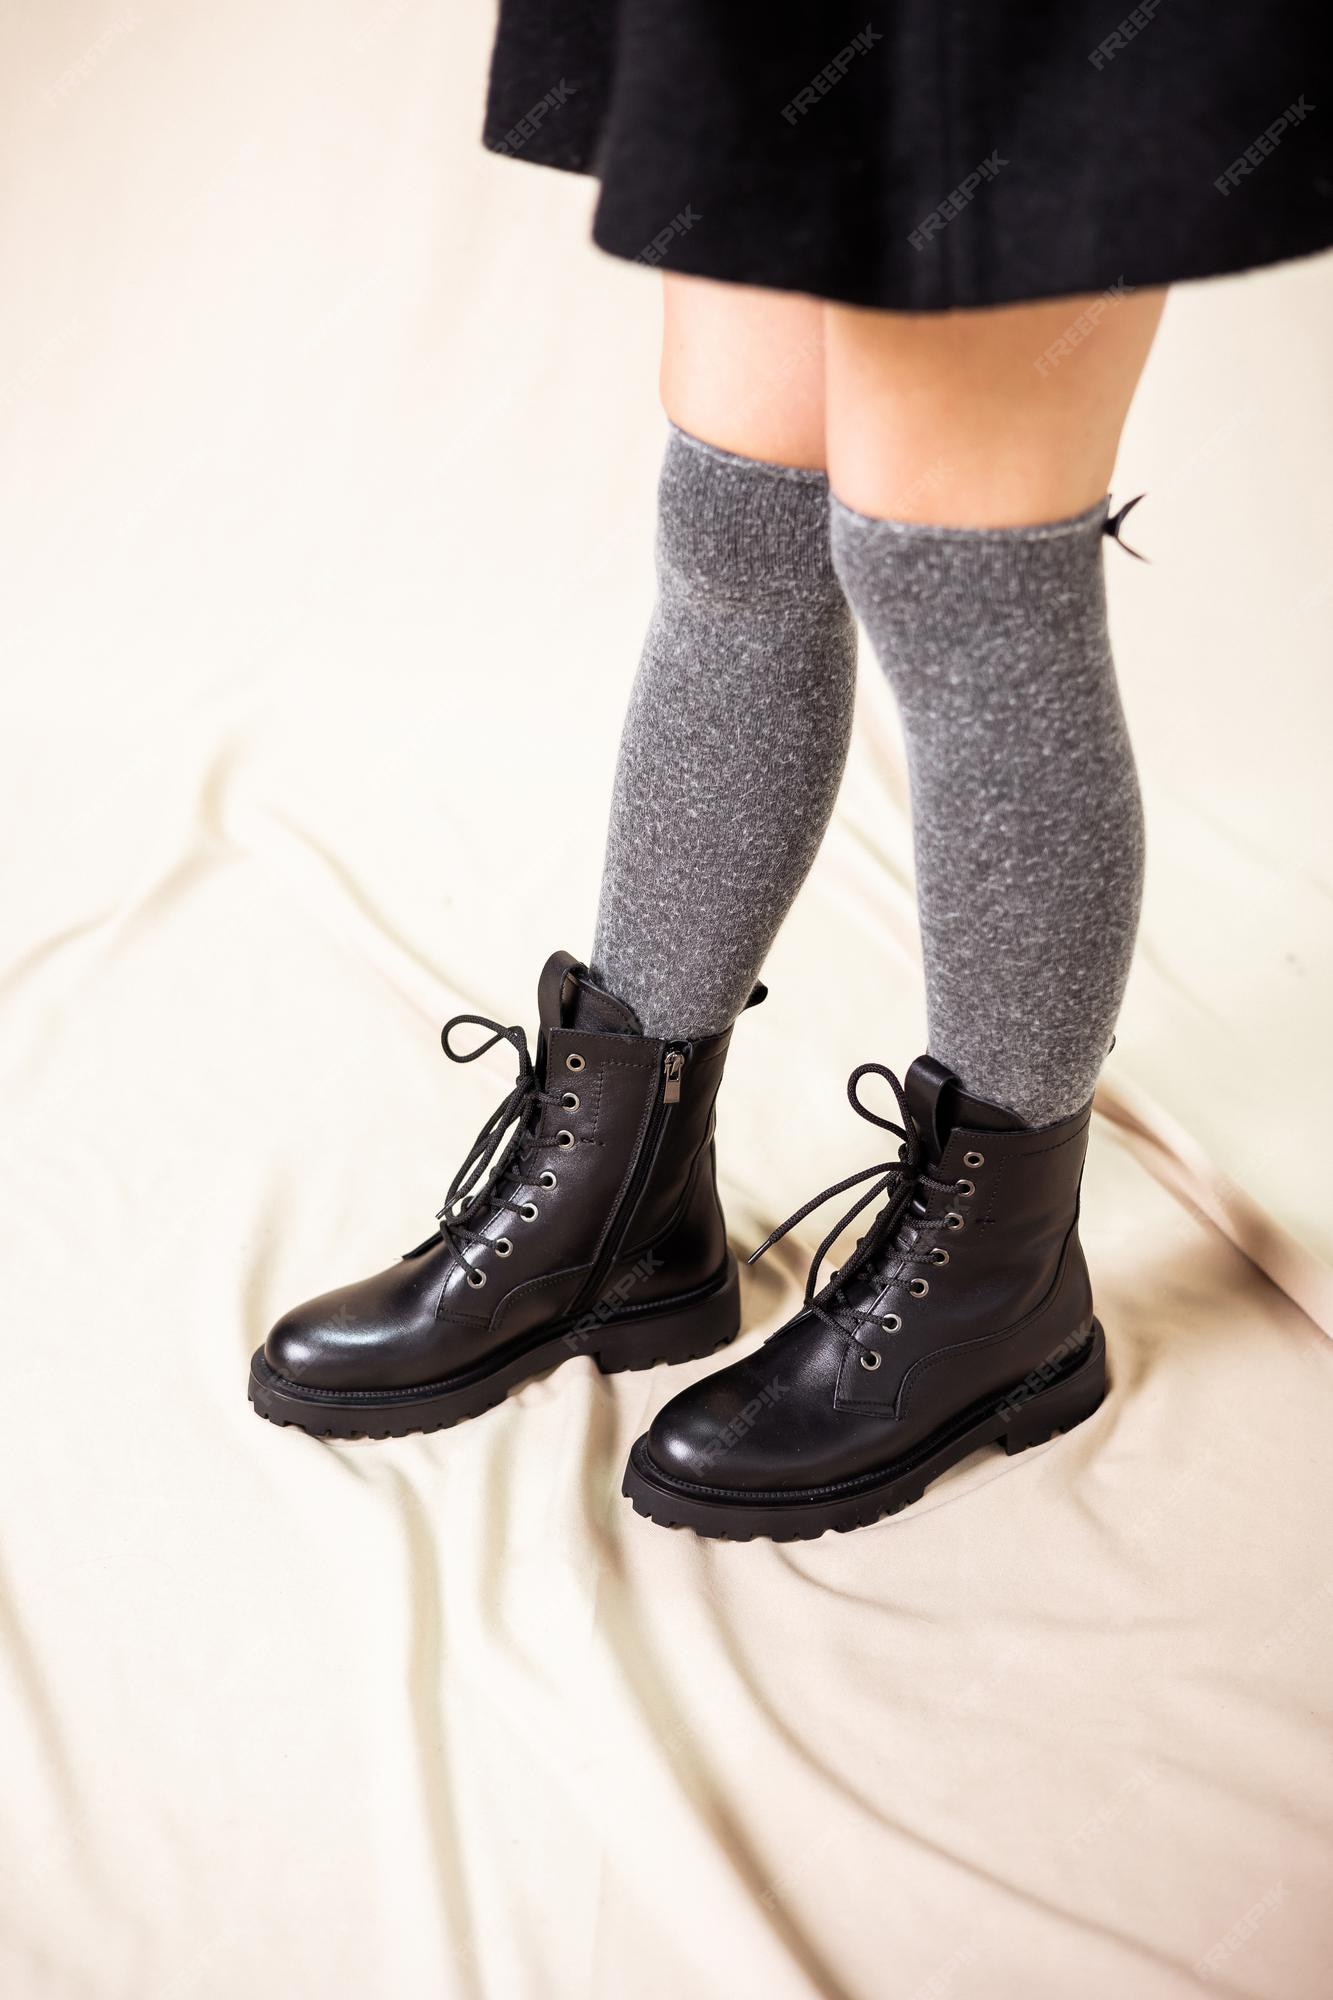 Botas de mujer negras fabricadas en piel auténtica. nueva colección de zapatos de invierno para con estilo. botas de cuero con estilo para mujer de moda. | Premium